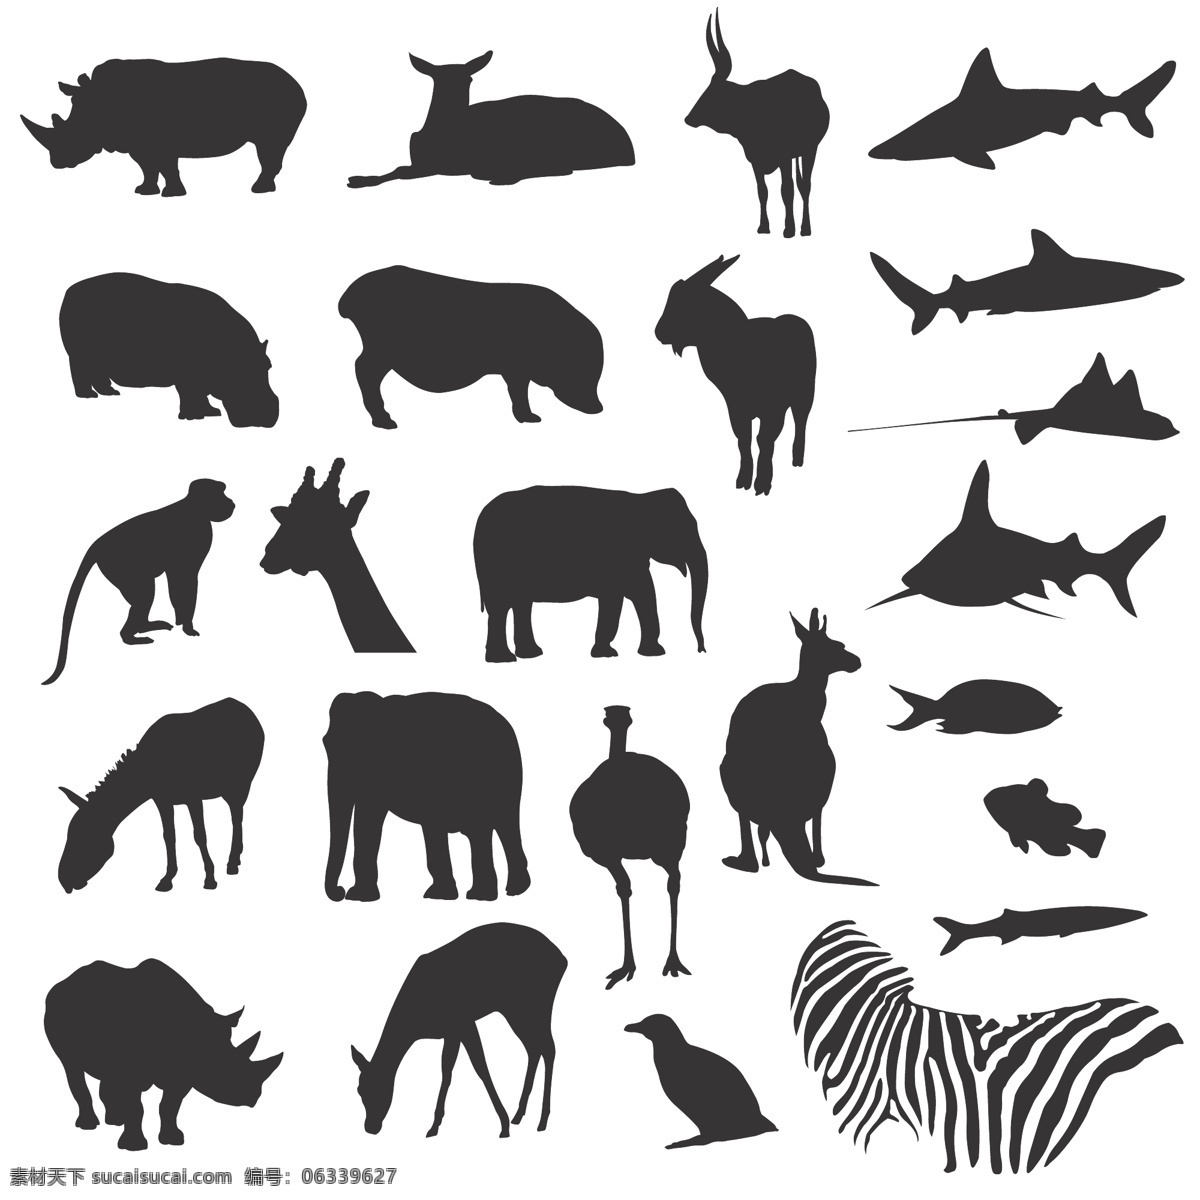 各种 陆地 海洋 动物 黑白 剪影 矢量 斑马 长颈鹿 大象 袋鼠 单色 海洋动物 河马 猴子 鸵鸟 鱼 马 犀牛 羊 剪影矢量动物 矢量图 矢量人物